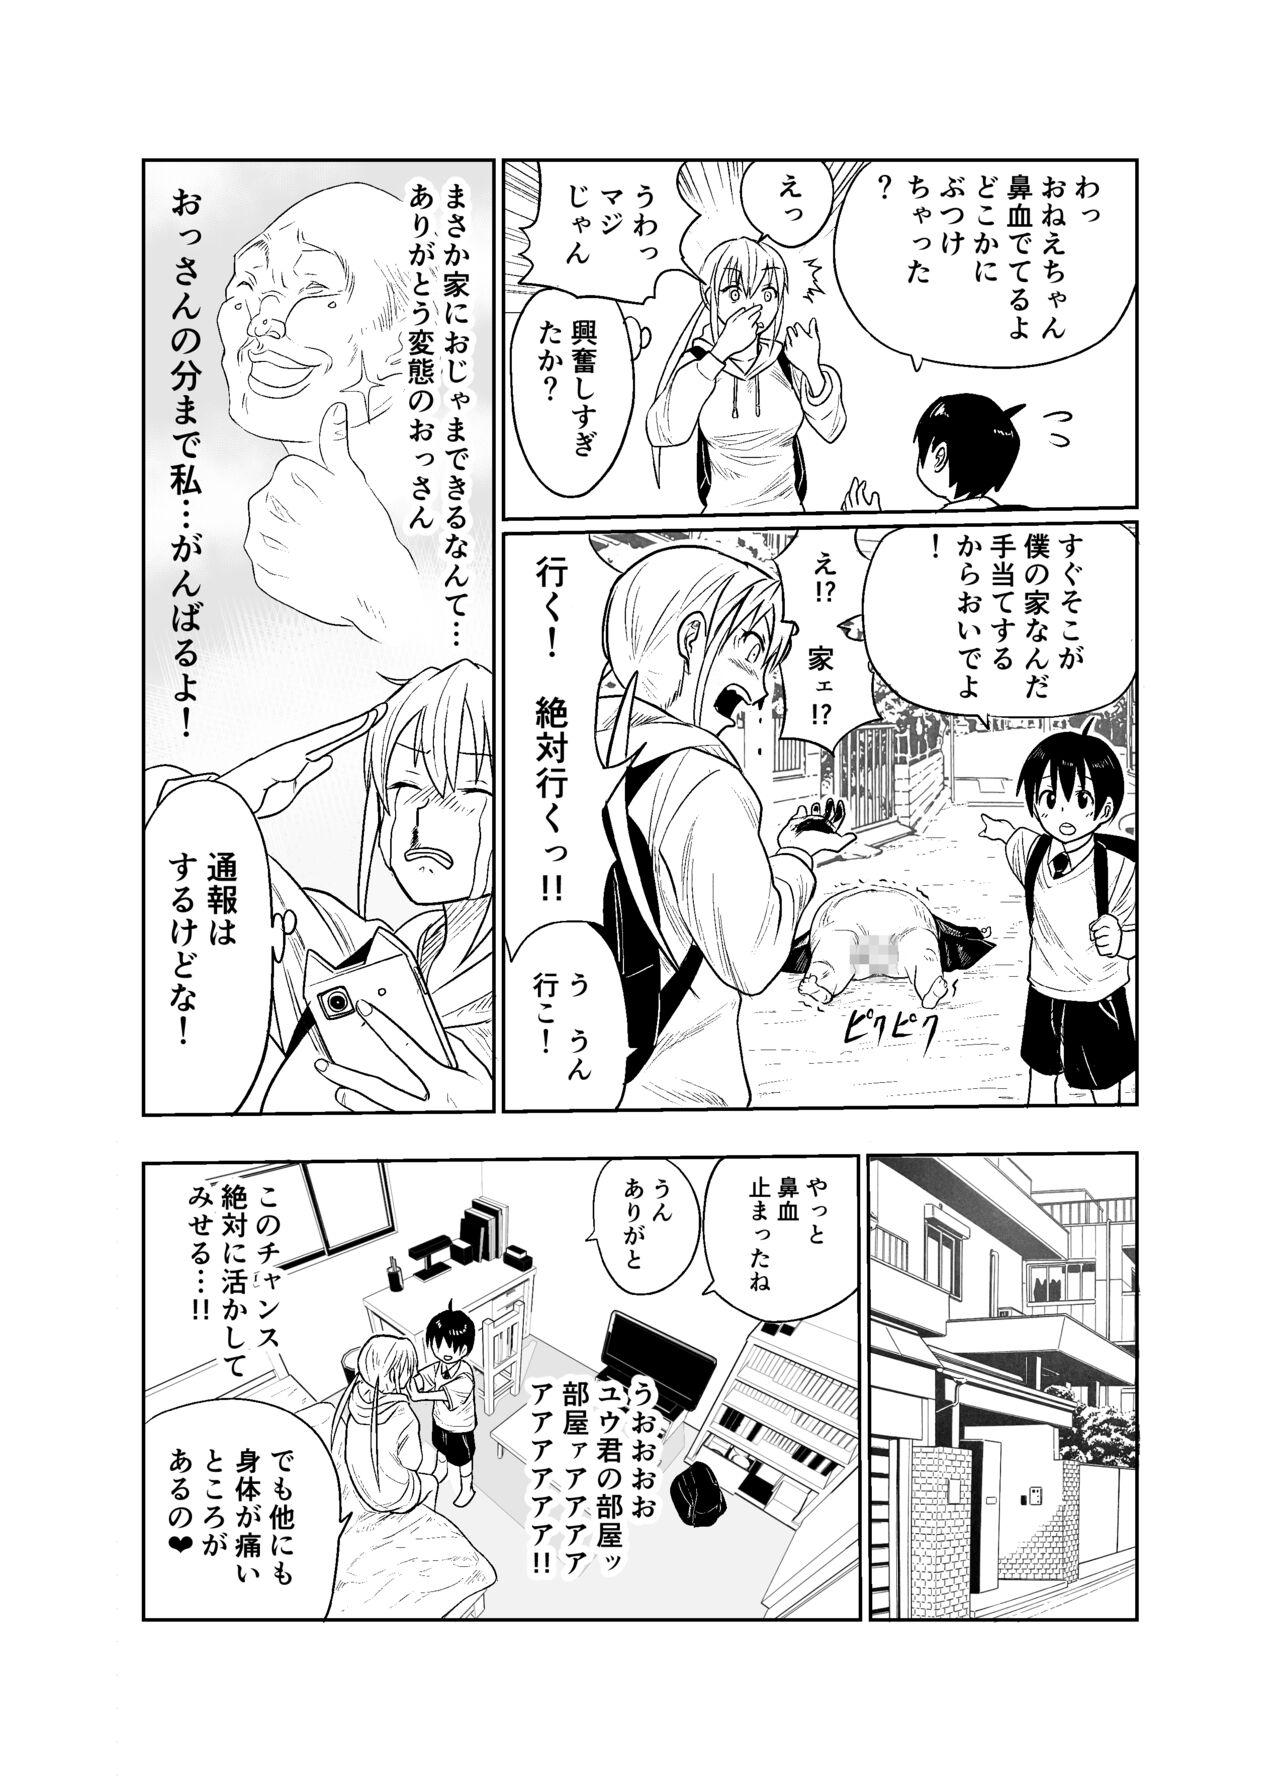 Jockstrap Shōnen wa Sutōkā Onna to Kaigō Suru - Original Sesso - Page 7